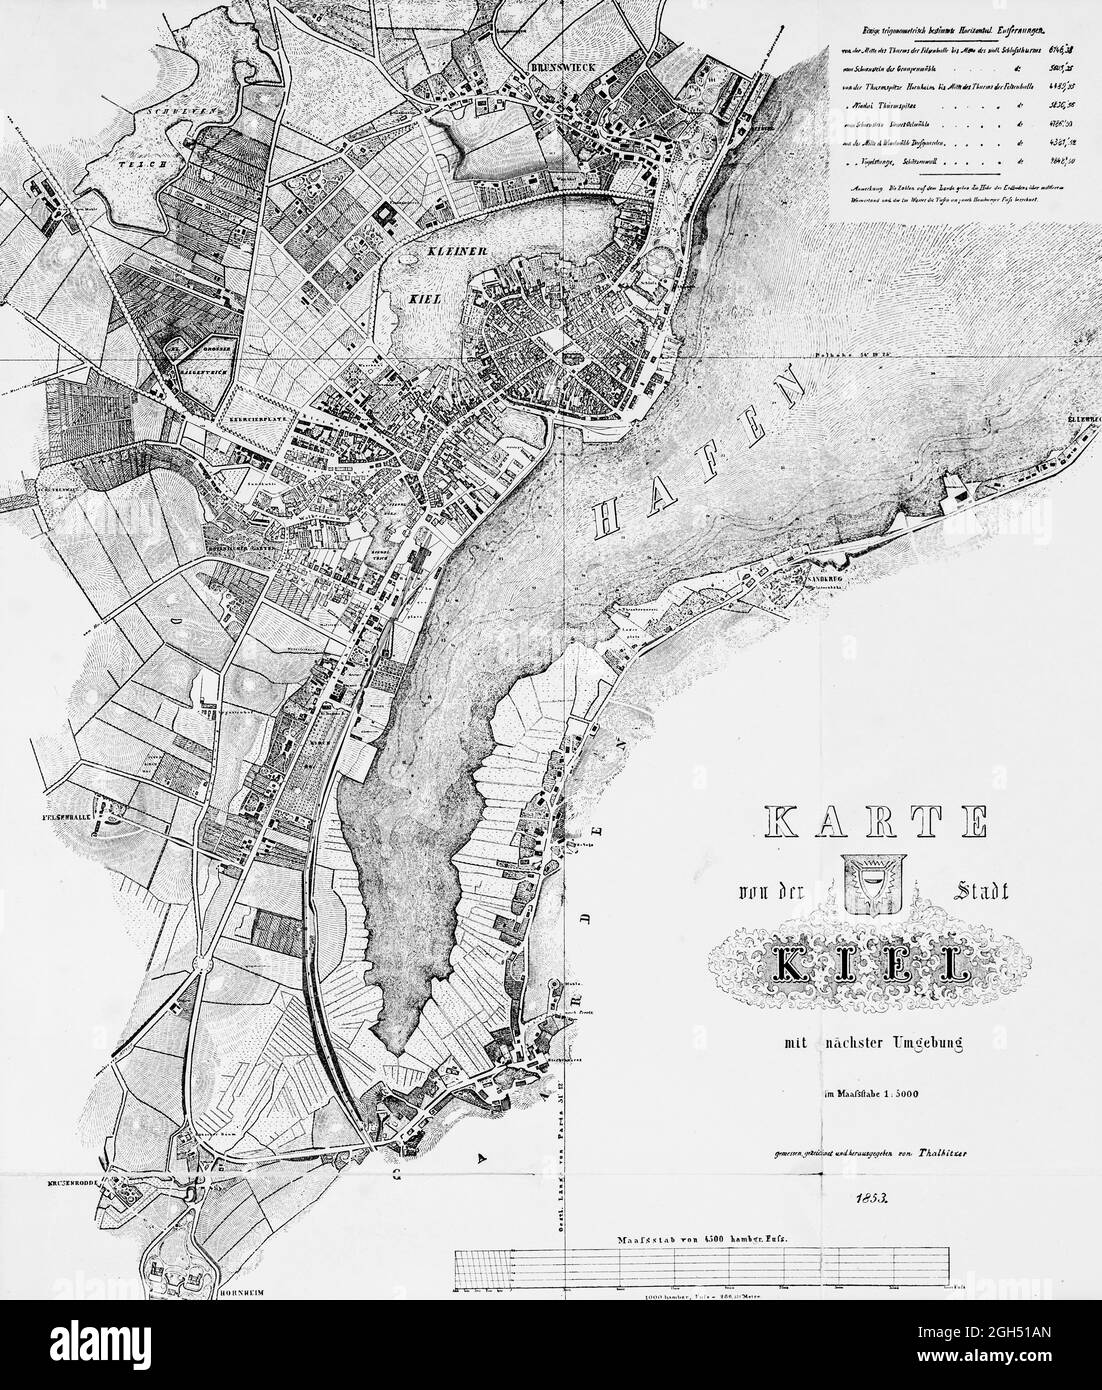 Historische Karte von Kiel und Umgebung im Jahr 1853, Maßstab 1:5000 Fuss, Schleswig-Holstein, Norddeutschland, Europa Stockfoto